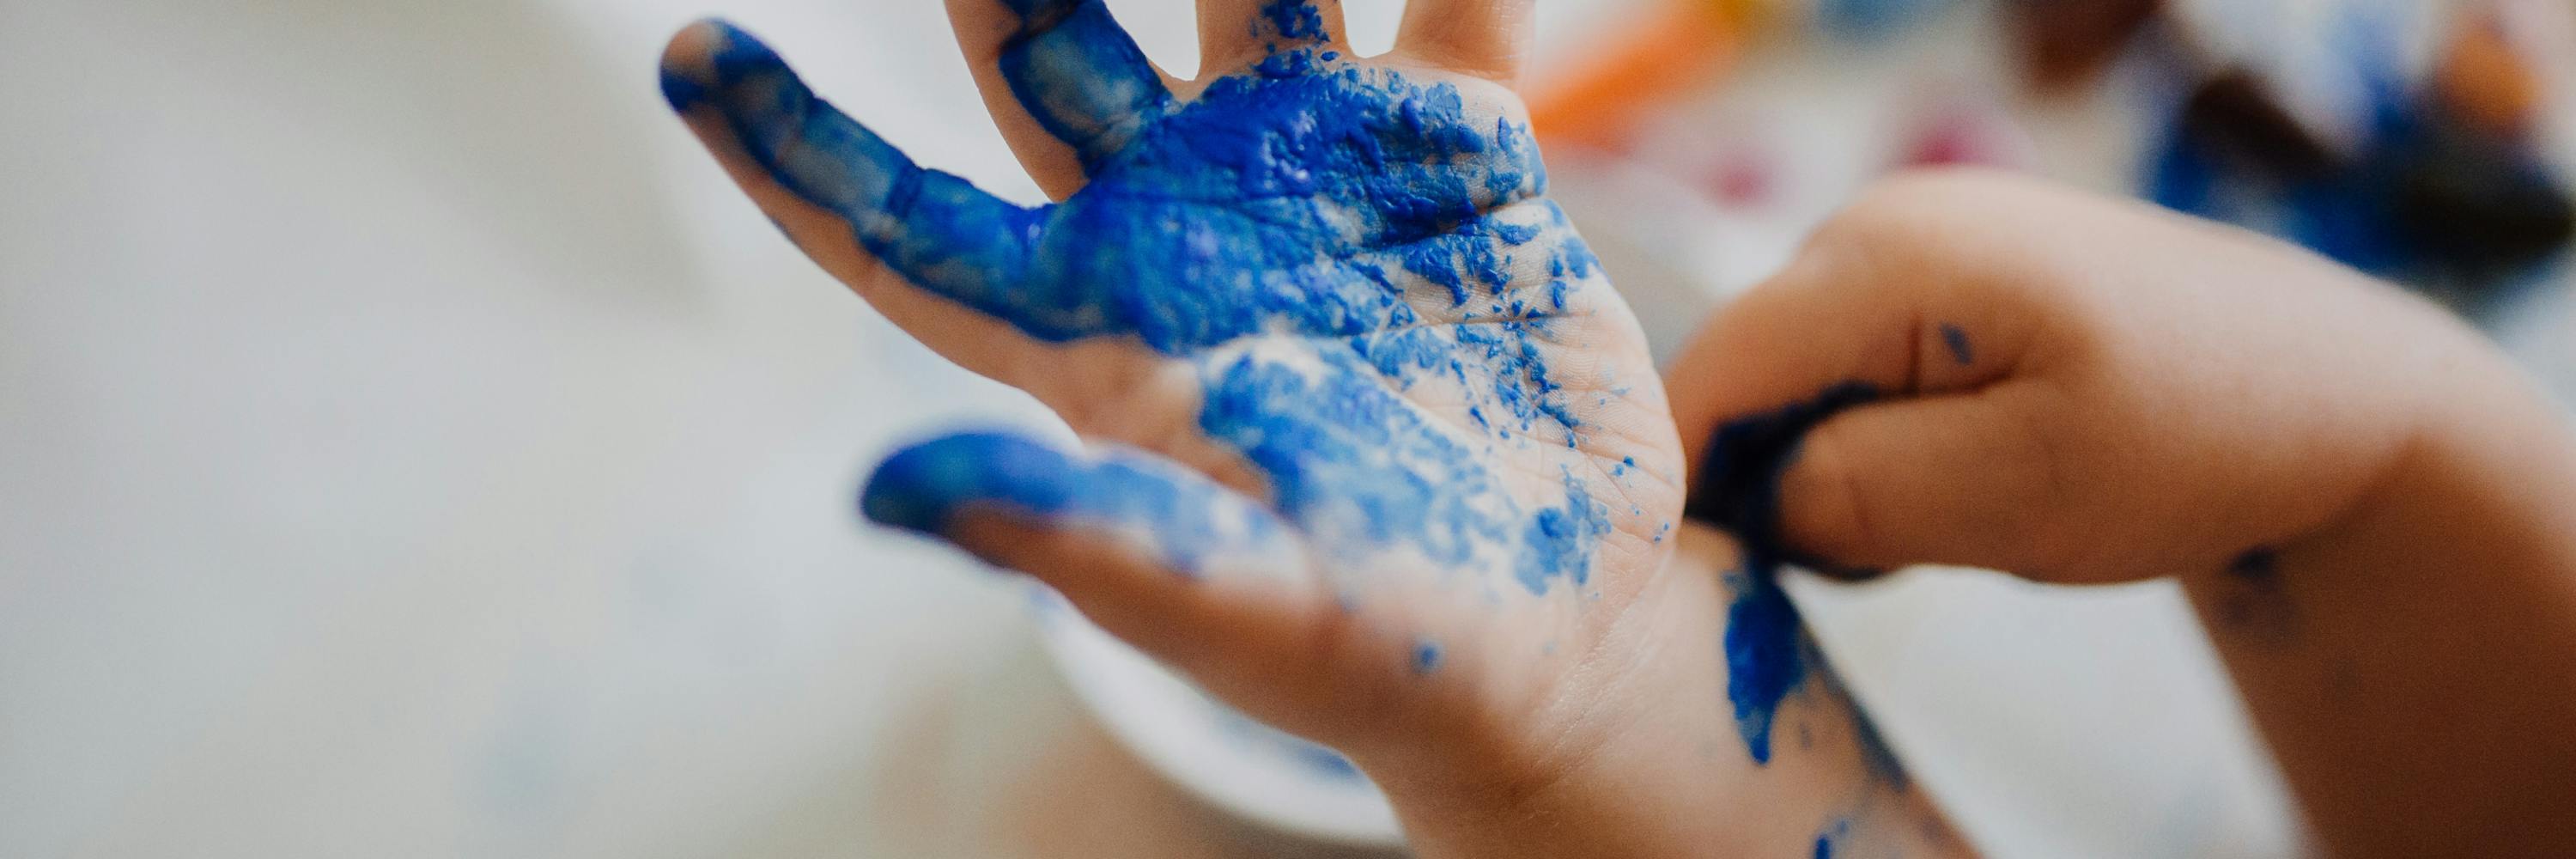 Kinderhand mit blauer Farbe besprenkelt